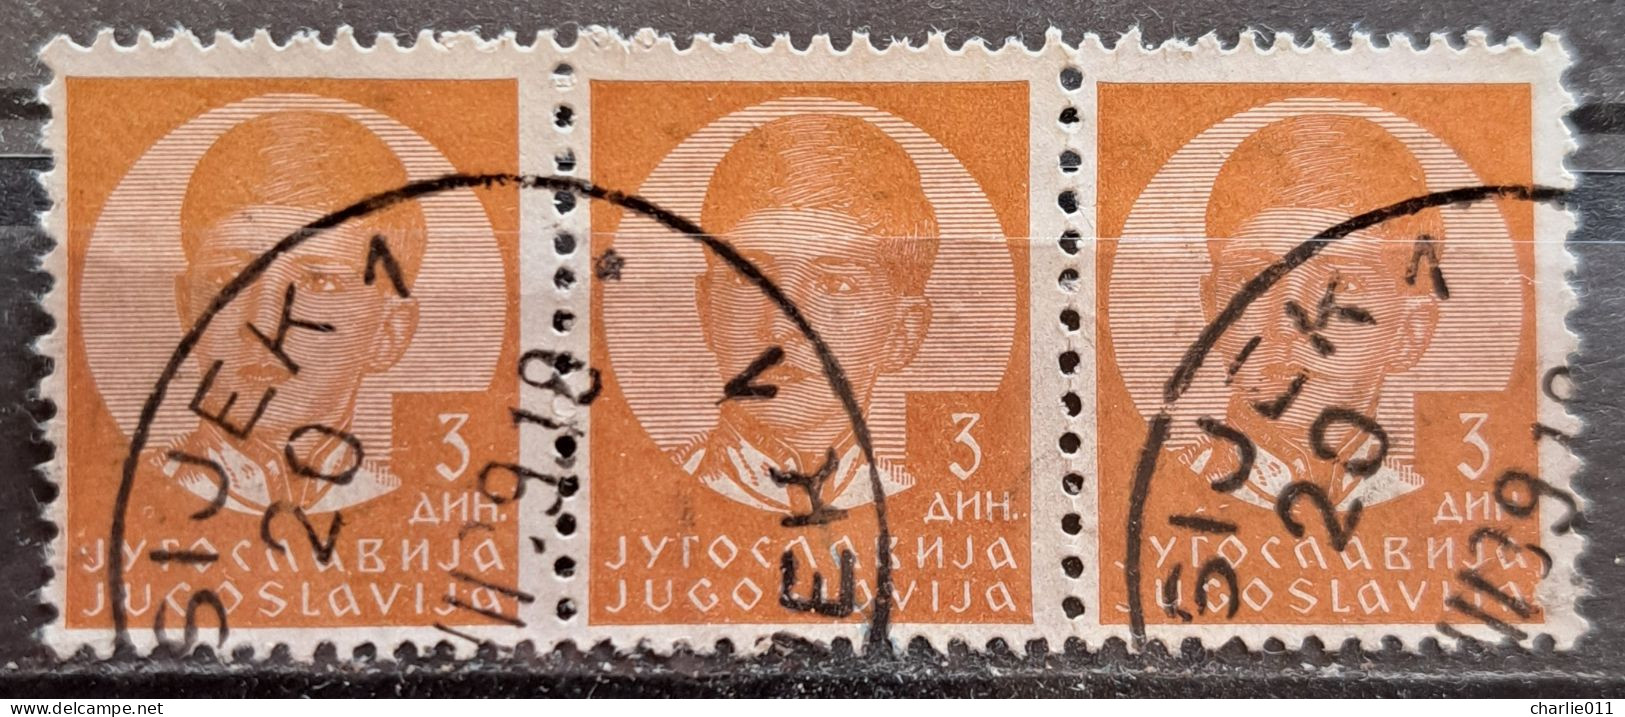 KING PETER II-3 DIN.-3 IN RAW-POSTMARK OSIJEK-ERROR-CROATIA-YUGOSLAVIA-1939 - Usati